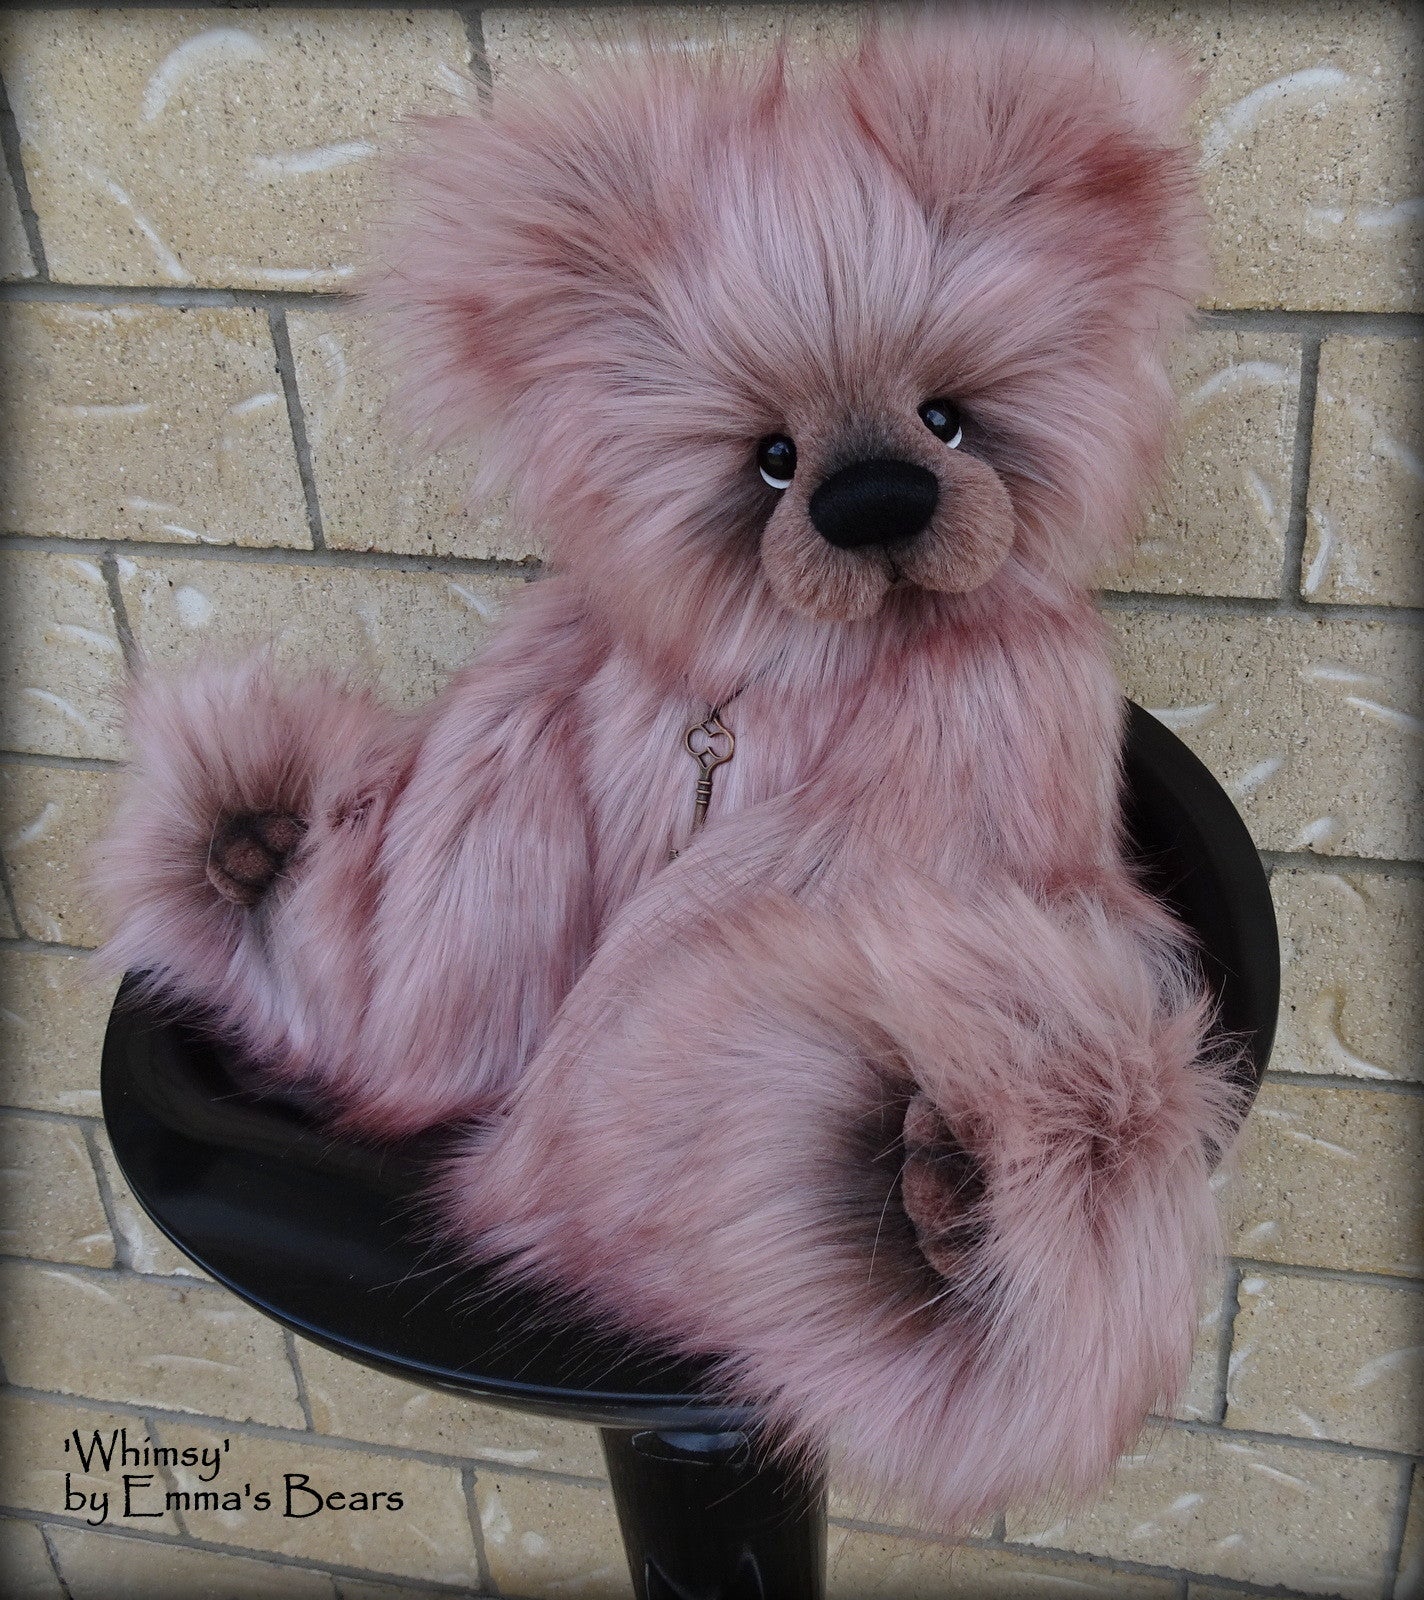 Whimsy - 20IN faux fur bear by Emmas Bears - OOAK